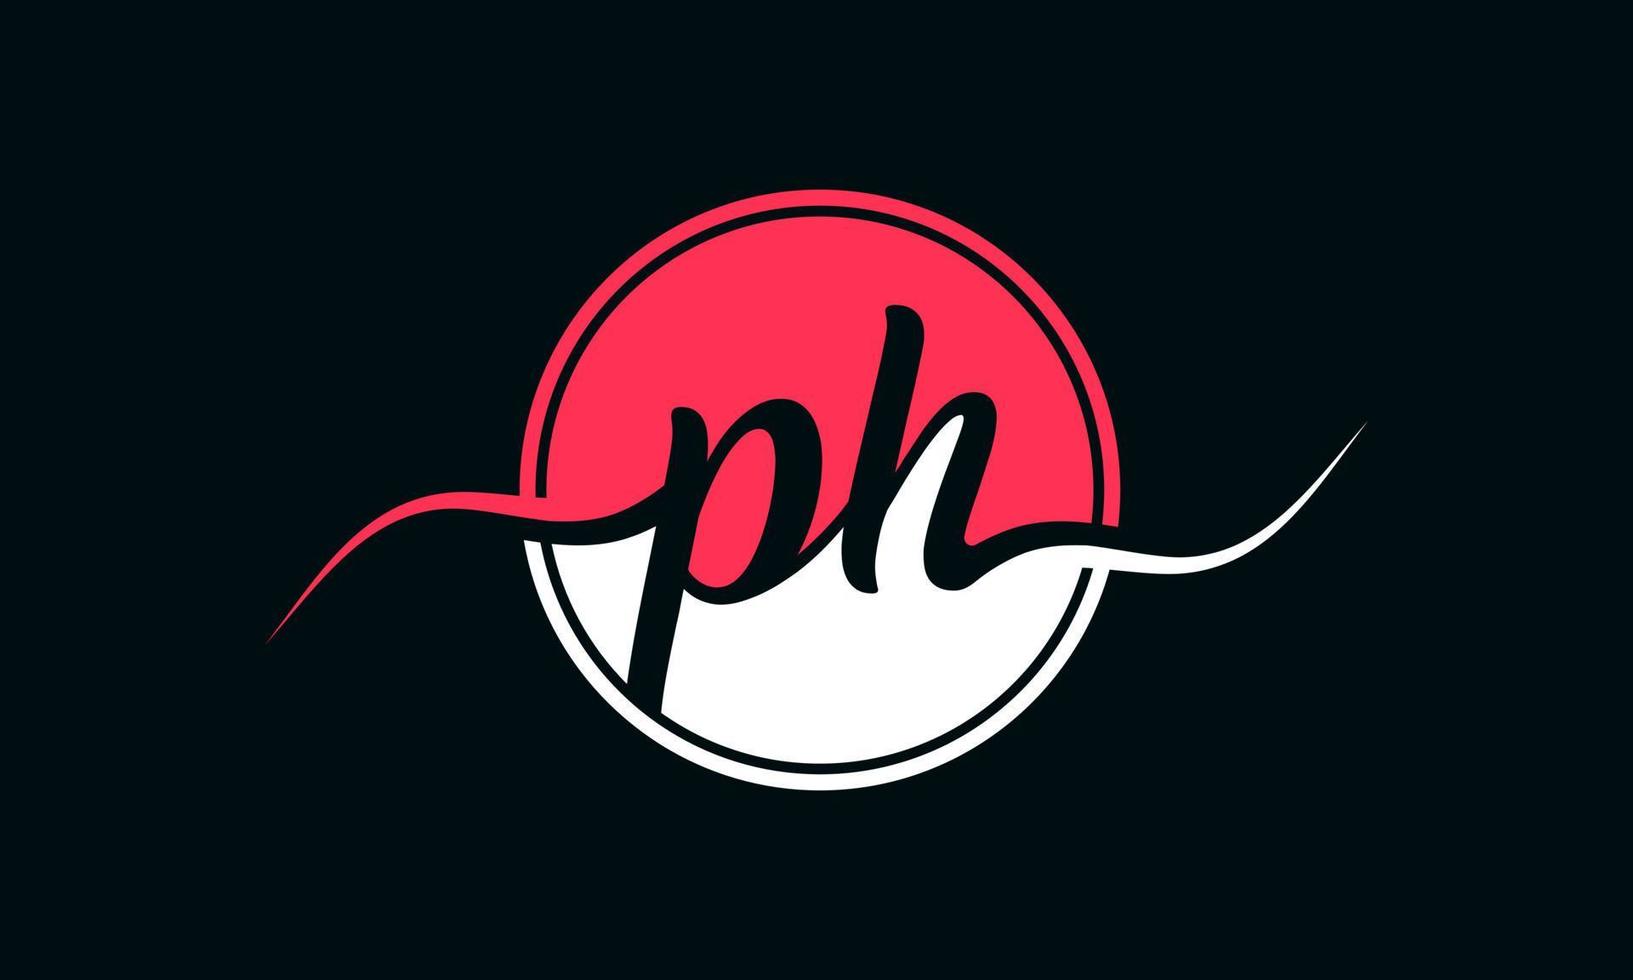 logo initial de la lettre ph avec cercle intérieur de couleur blanche et rose. vecteur professionnel.